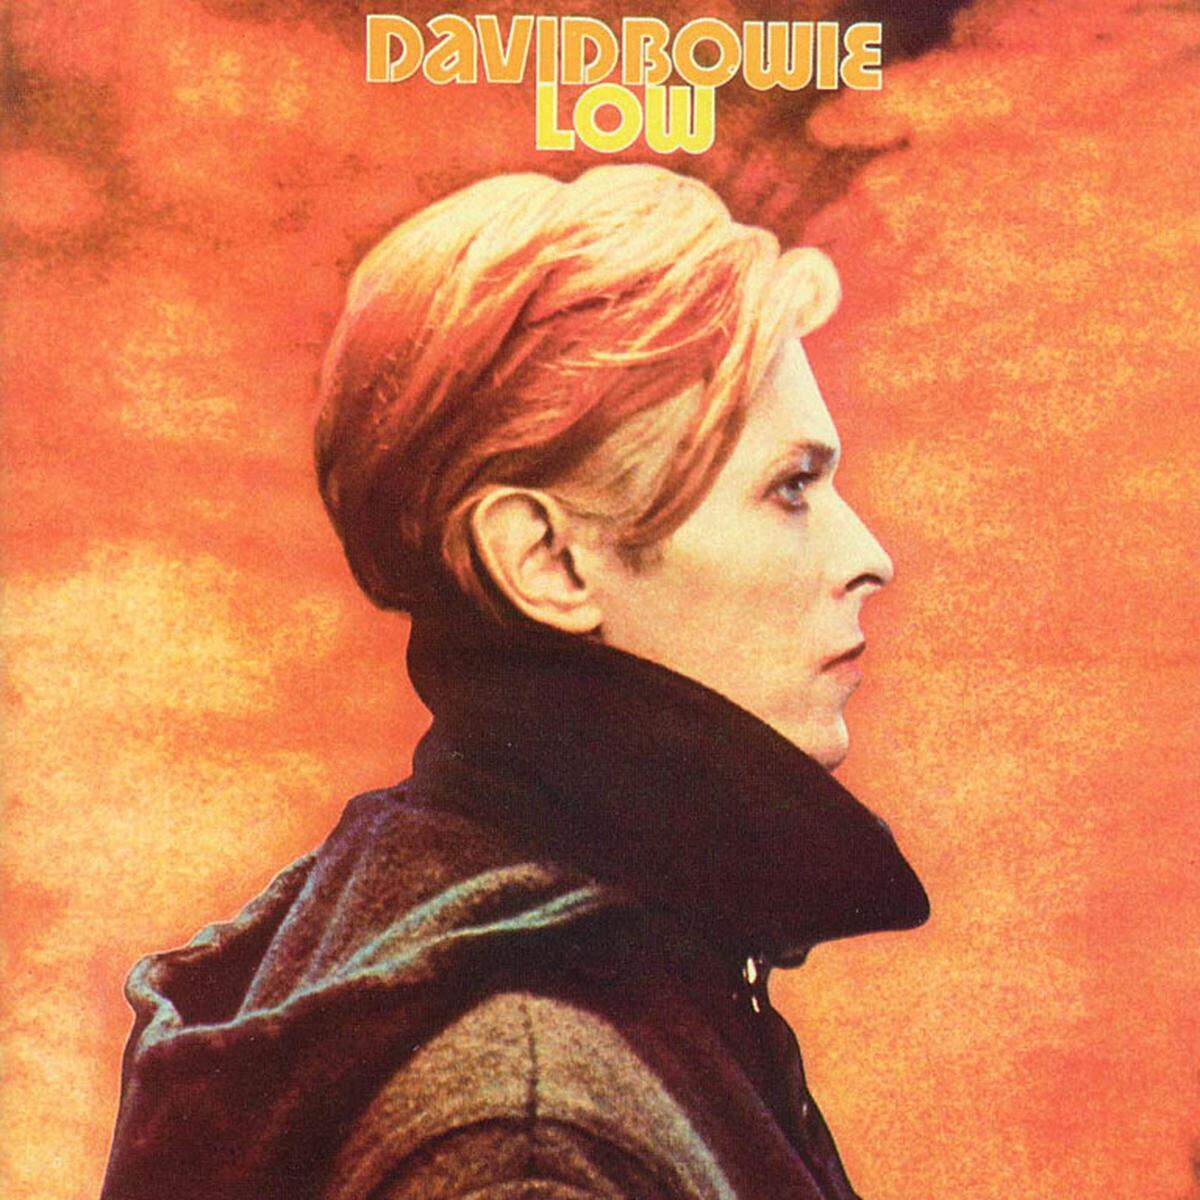 Pop-Chamäleon David Bowie gehörte zu den größten Erscheinungen des 20. Jahrhunderts. Mit seiner experimentellen Berlin-Trilogie hat er unzählige Bands beeinflusst. "Low" (1977) ist ein Highlight.